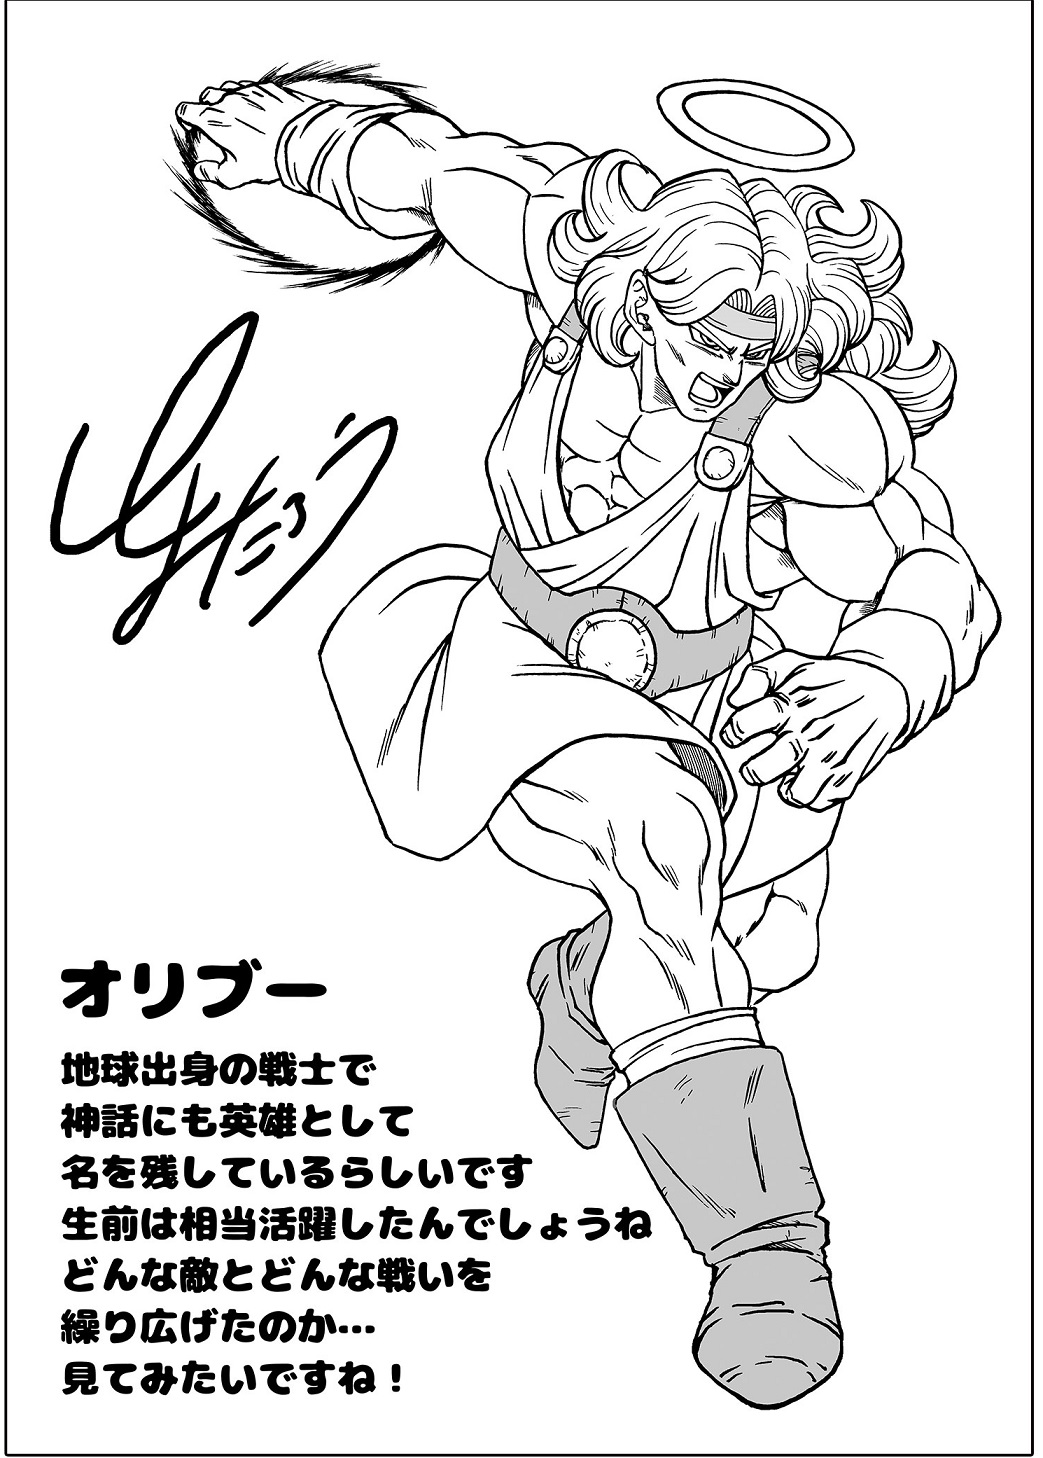 Ilustrador de Dragon Ball Super fez um desenho especial de Paikuhan